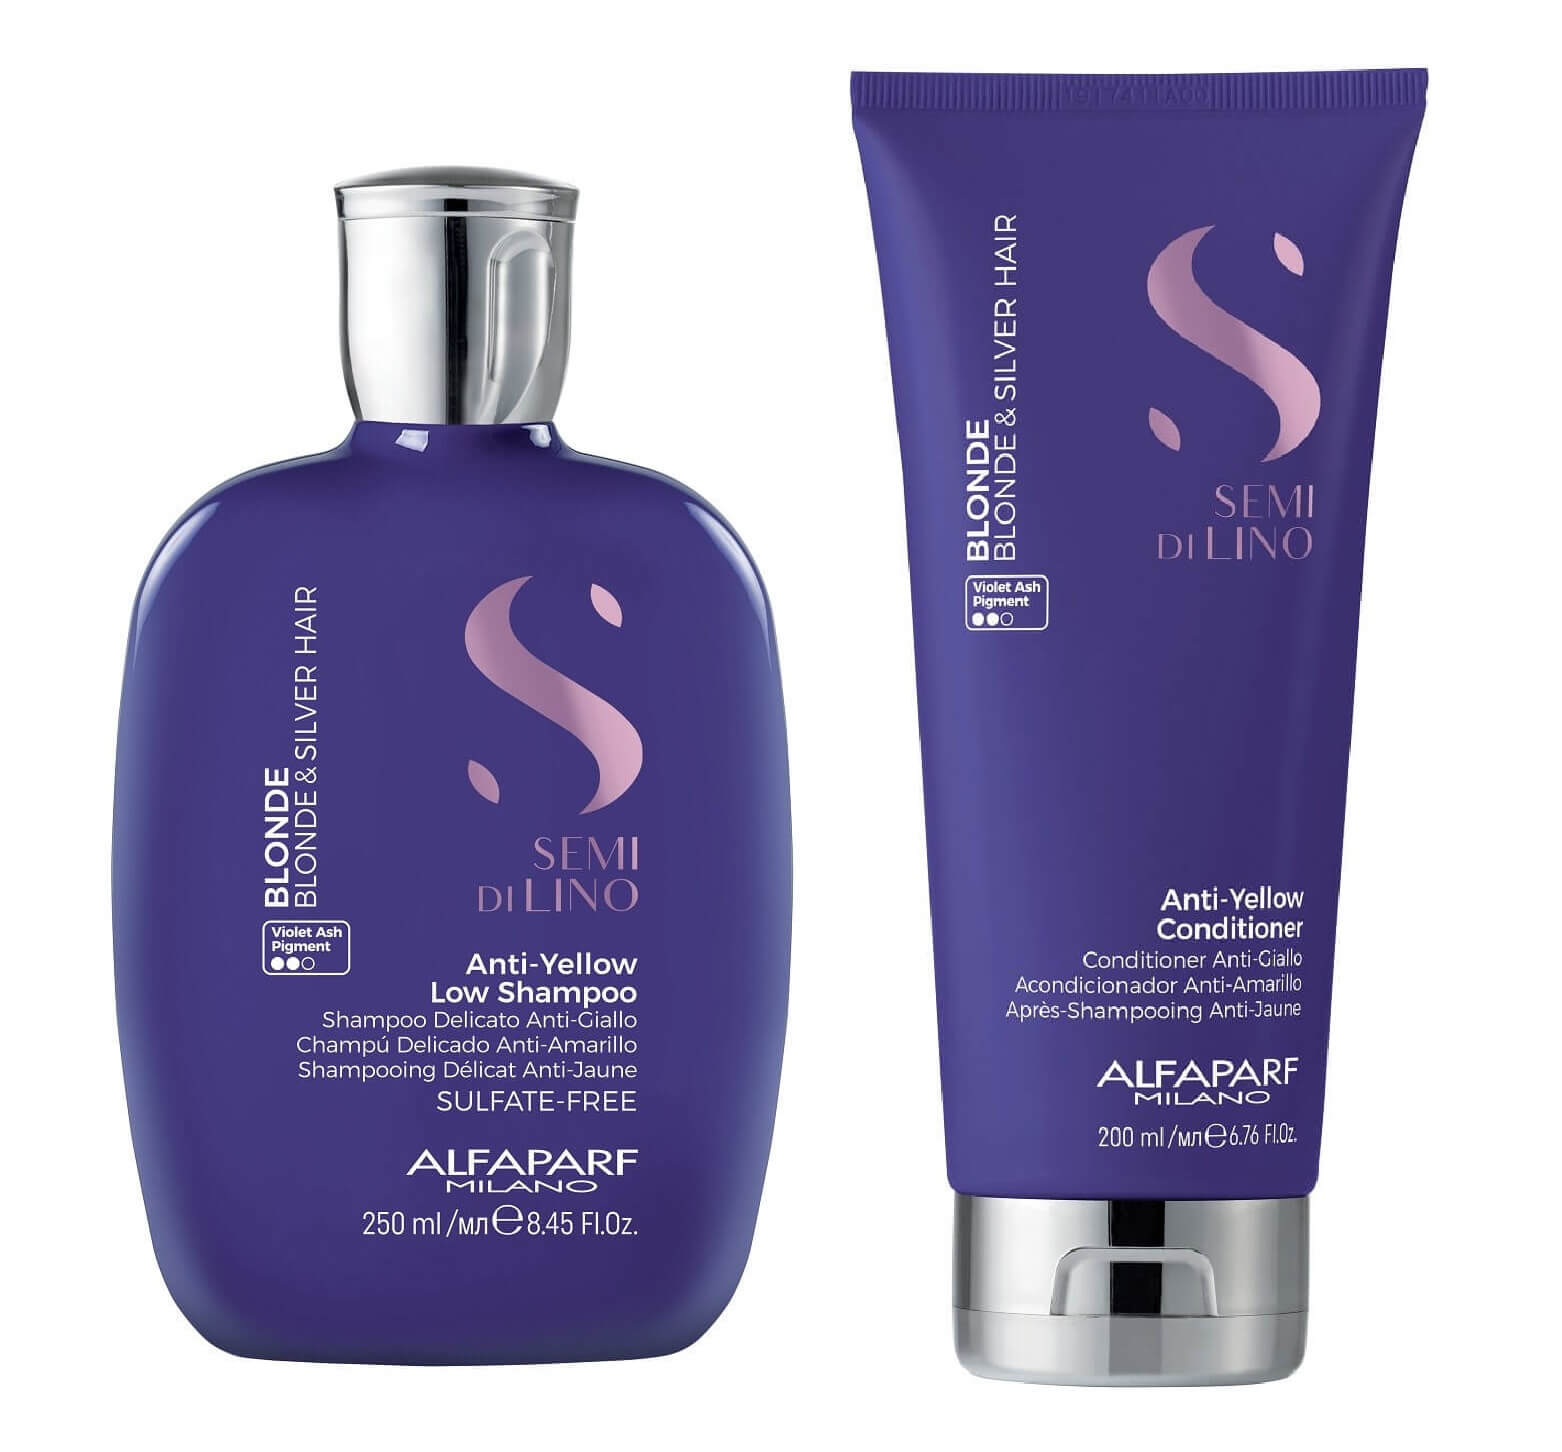 sulfur szampon przeciwłupieżowy